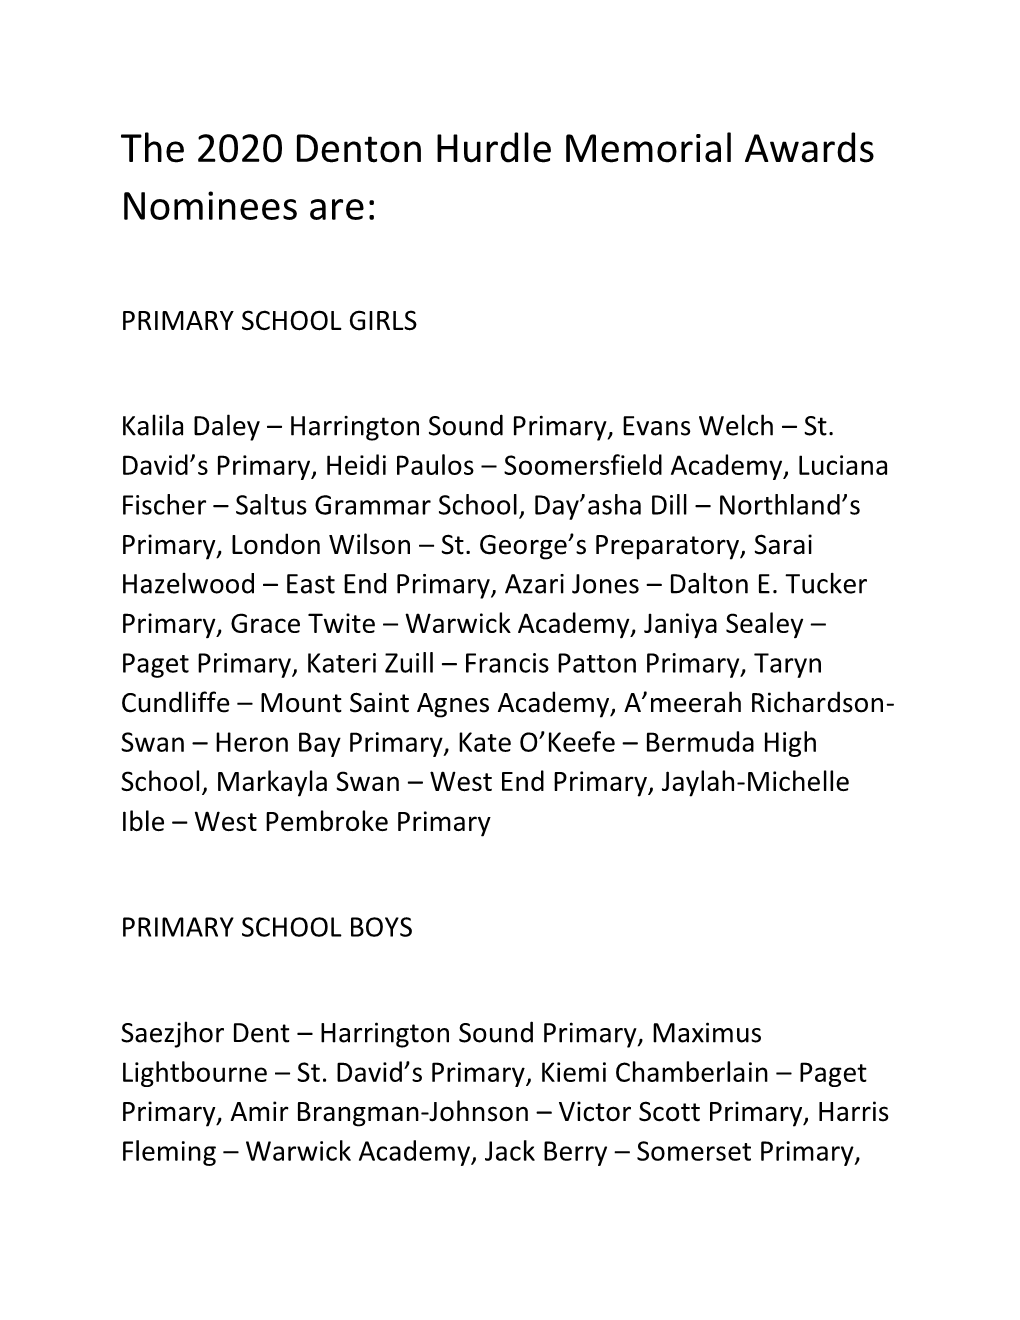 The 2020 Denton Hurdle Memorial Awards Nominees Are